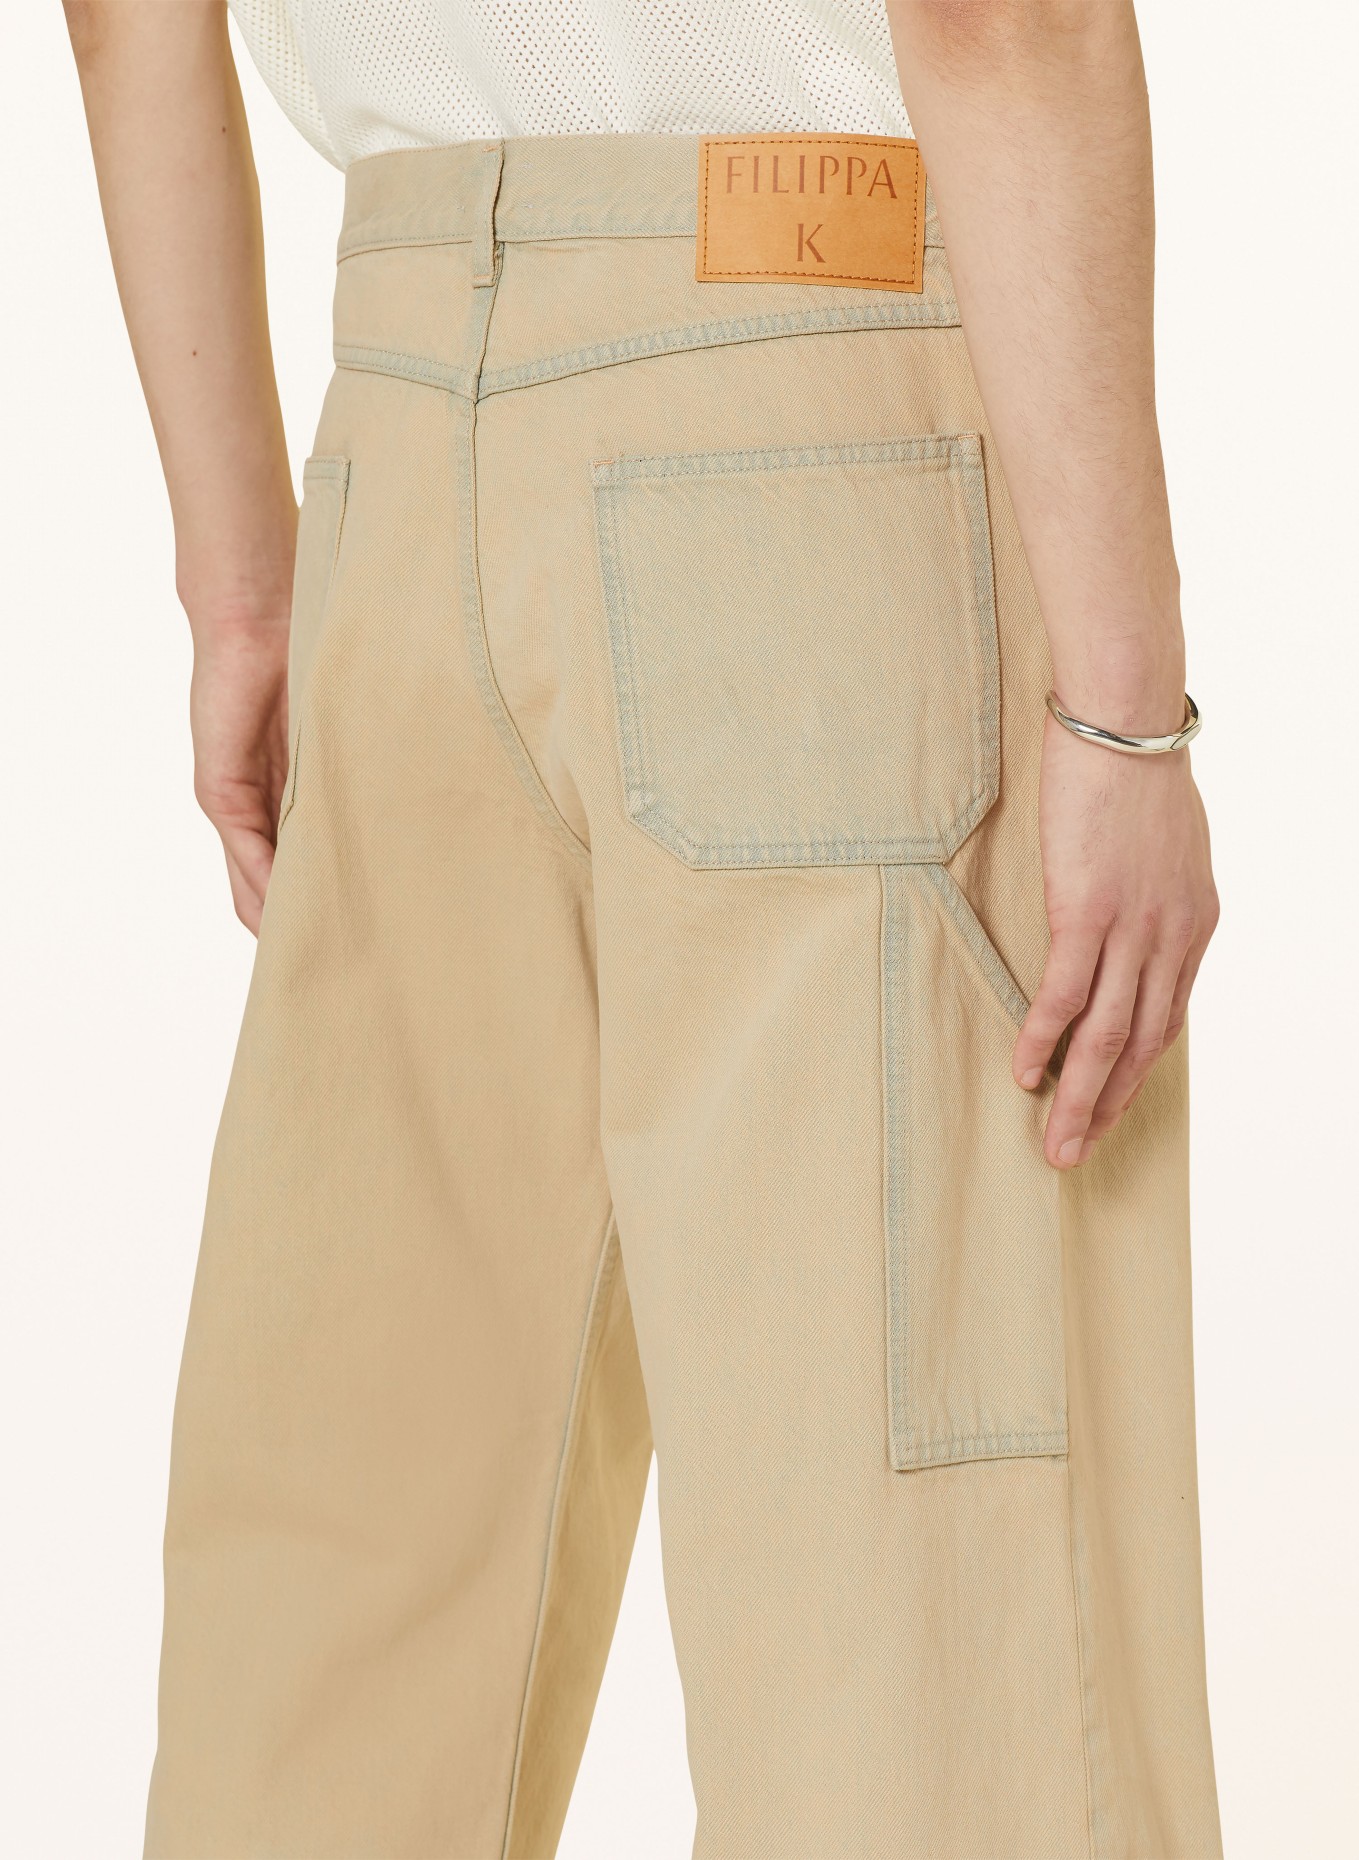 Filippa K Jeans regular fit, Color: 53 (Image 6)